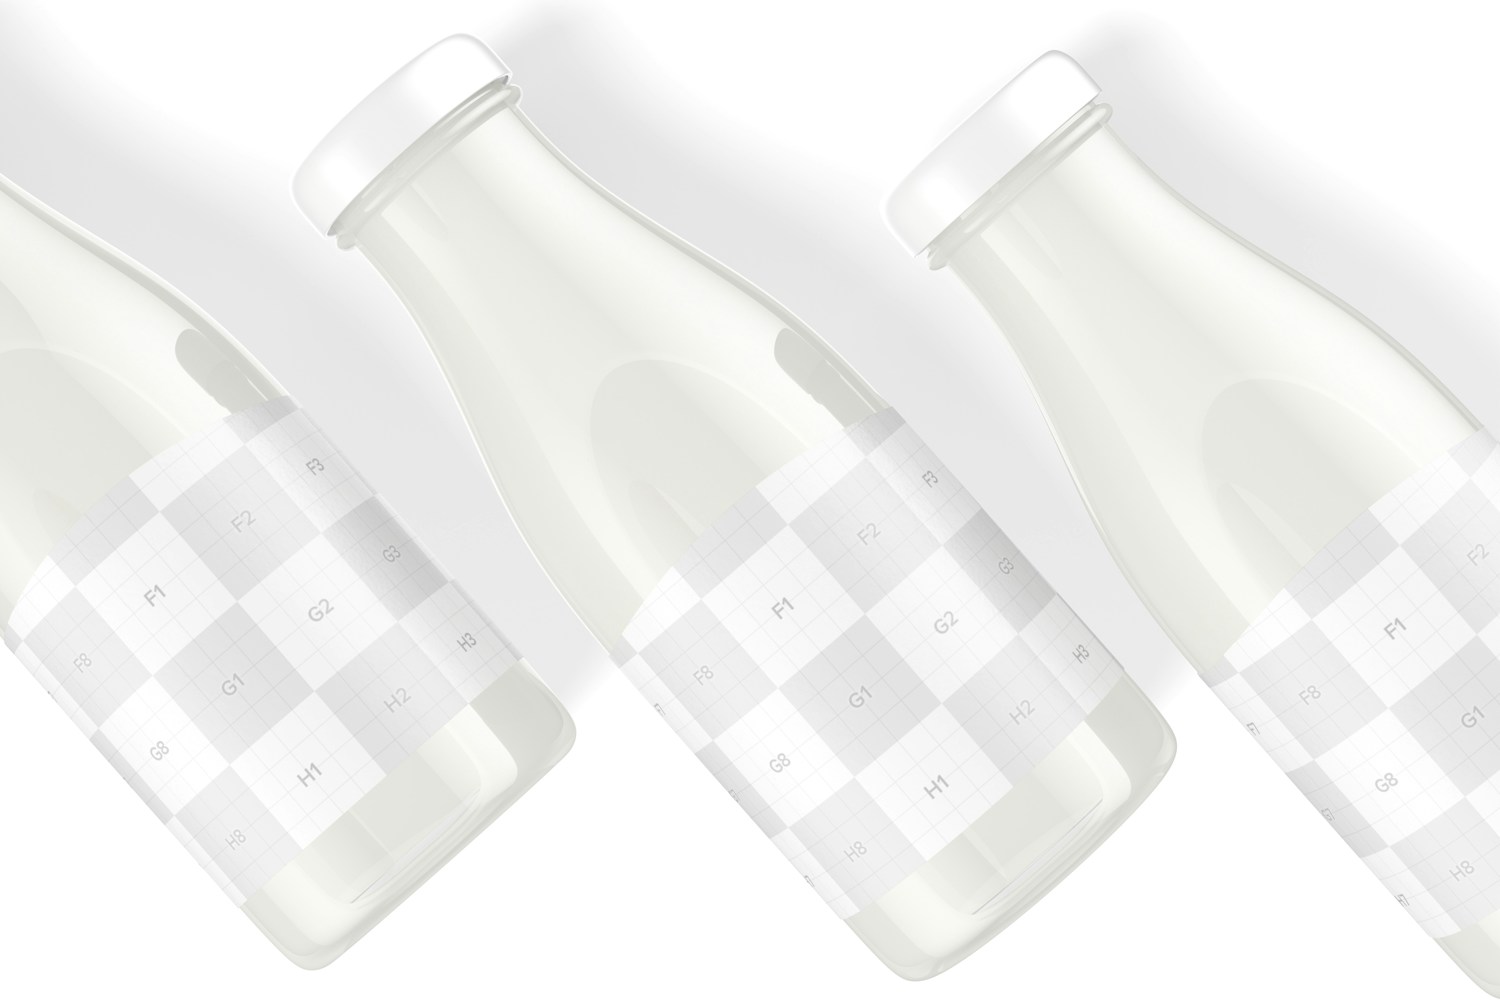 11 oz Glass Milk Bottles Mockup, Close Up